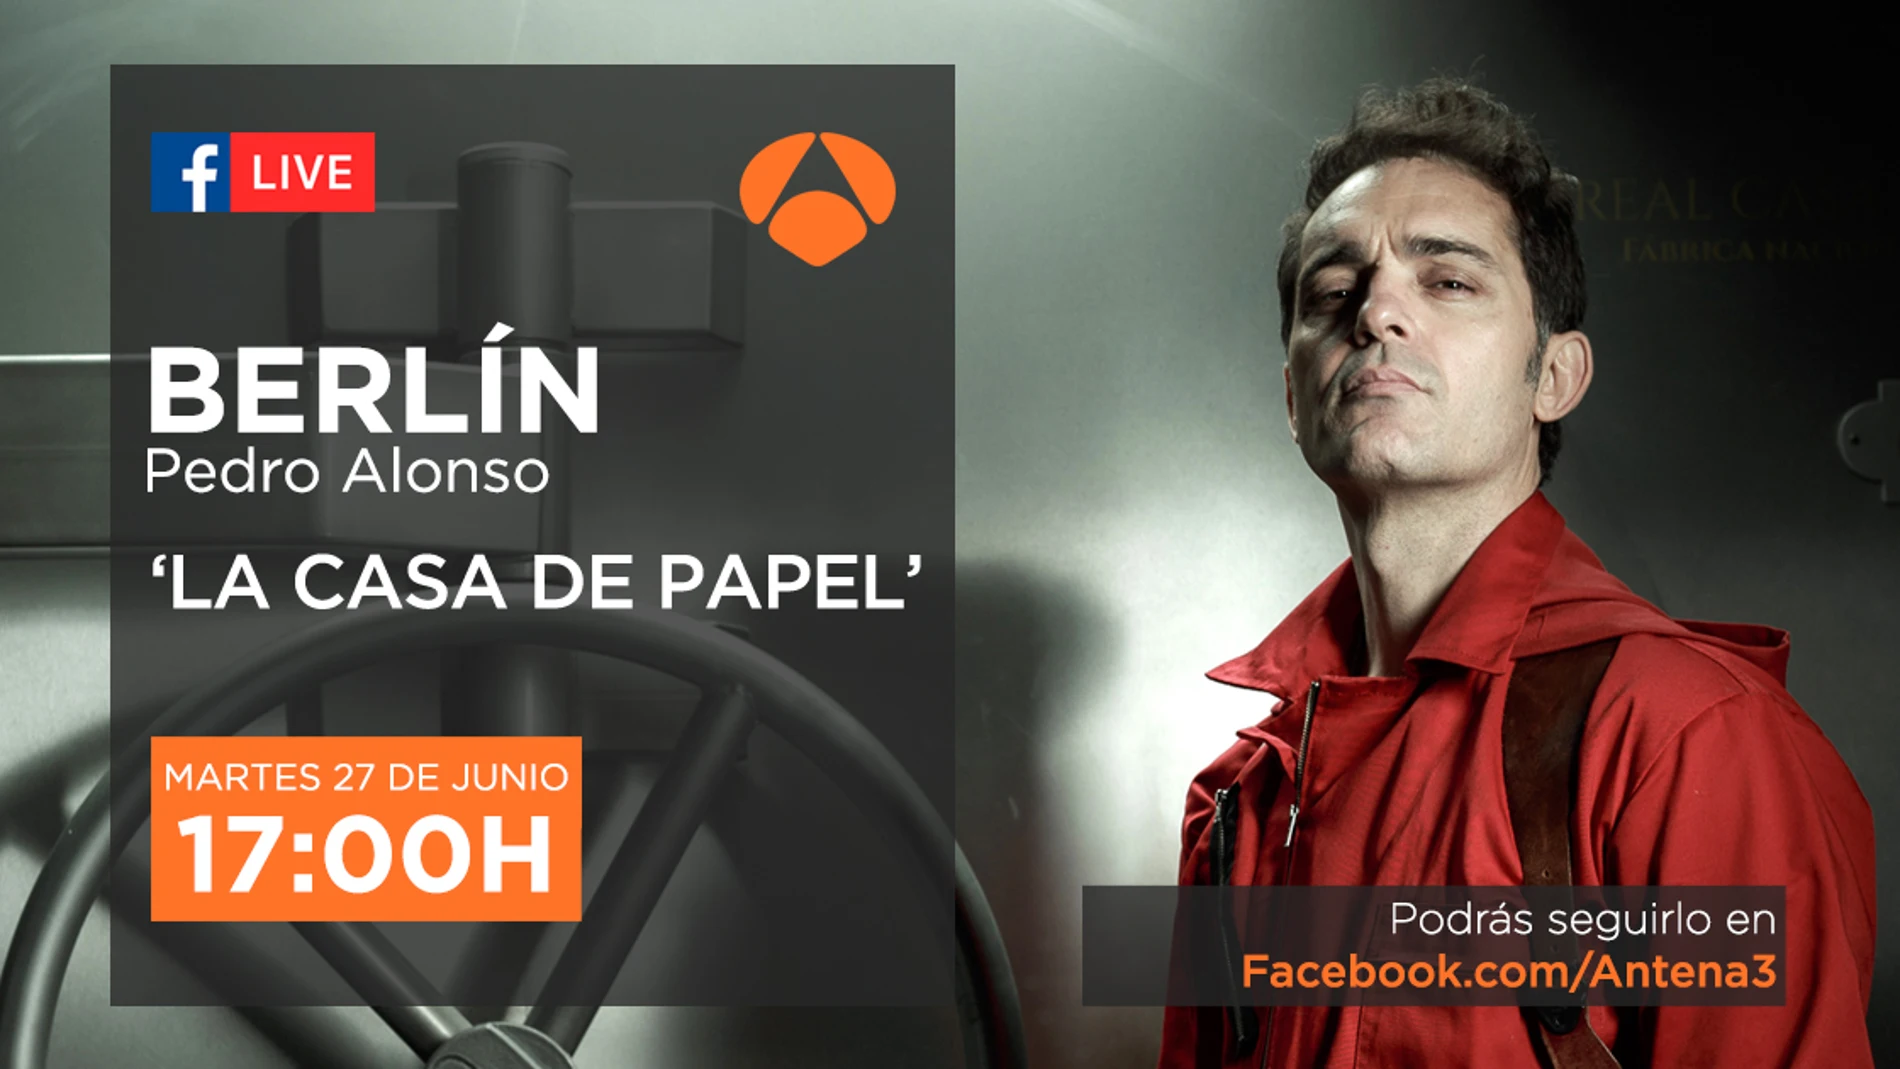 Pedro Alonso, Berlín en 'La casa de papel', nos mostrará su lado más bueno en directo en Facebook Live